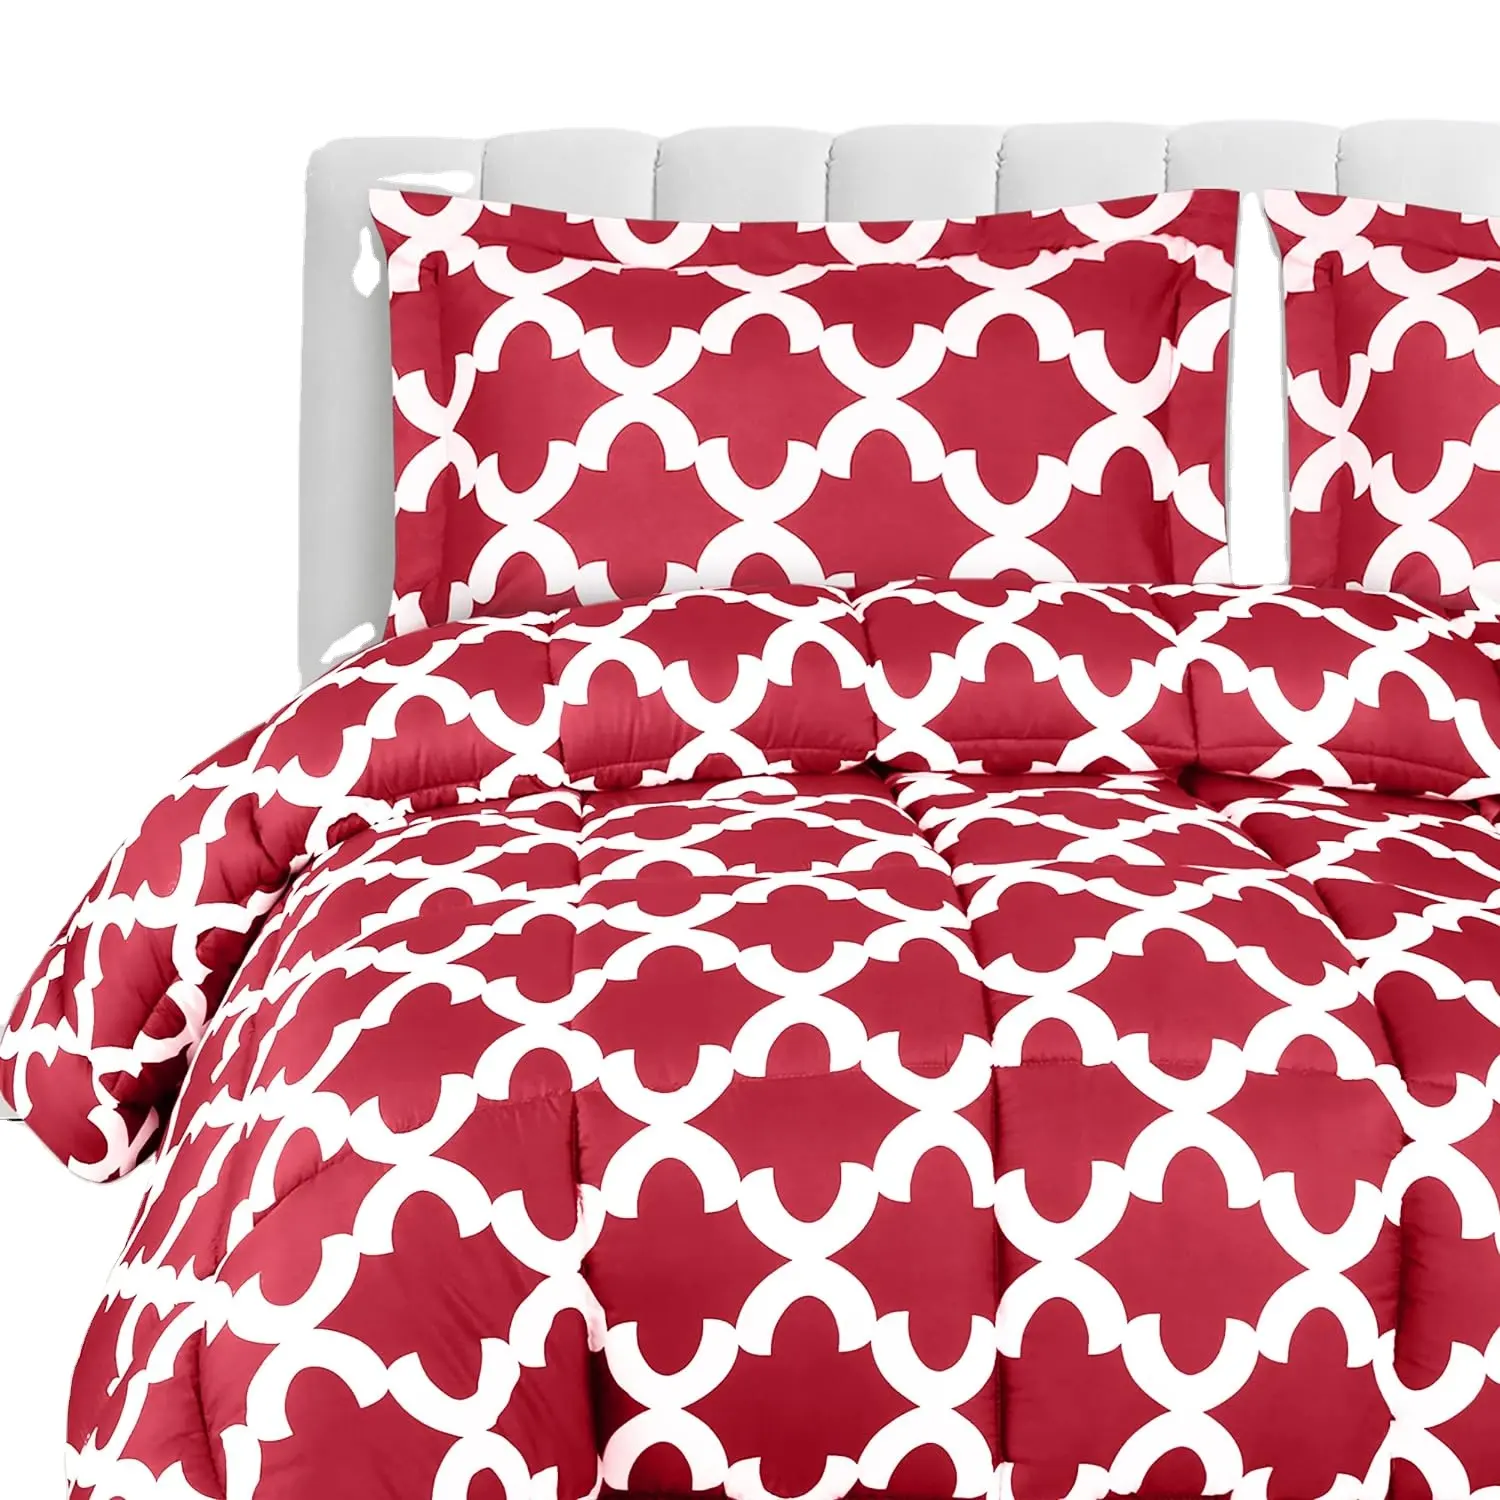 Impresión geométrica estilo simple funda de cama juegos de edredón cuna de bebé juego de cama de poliéster